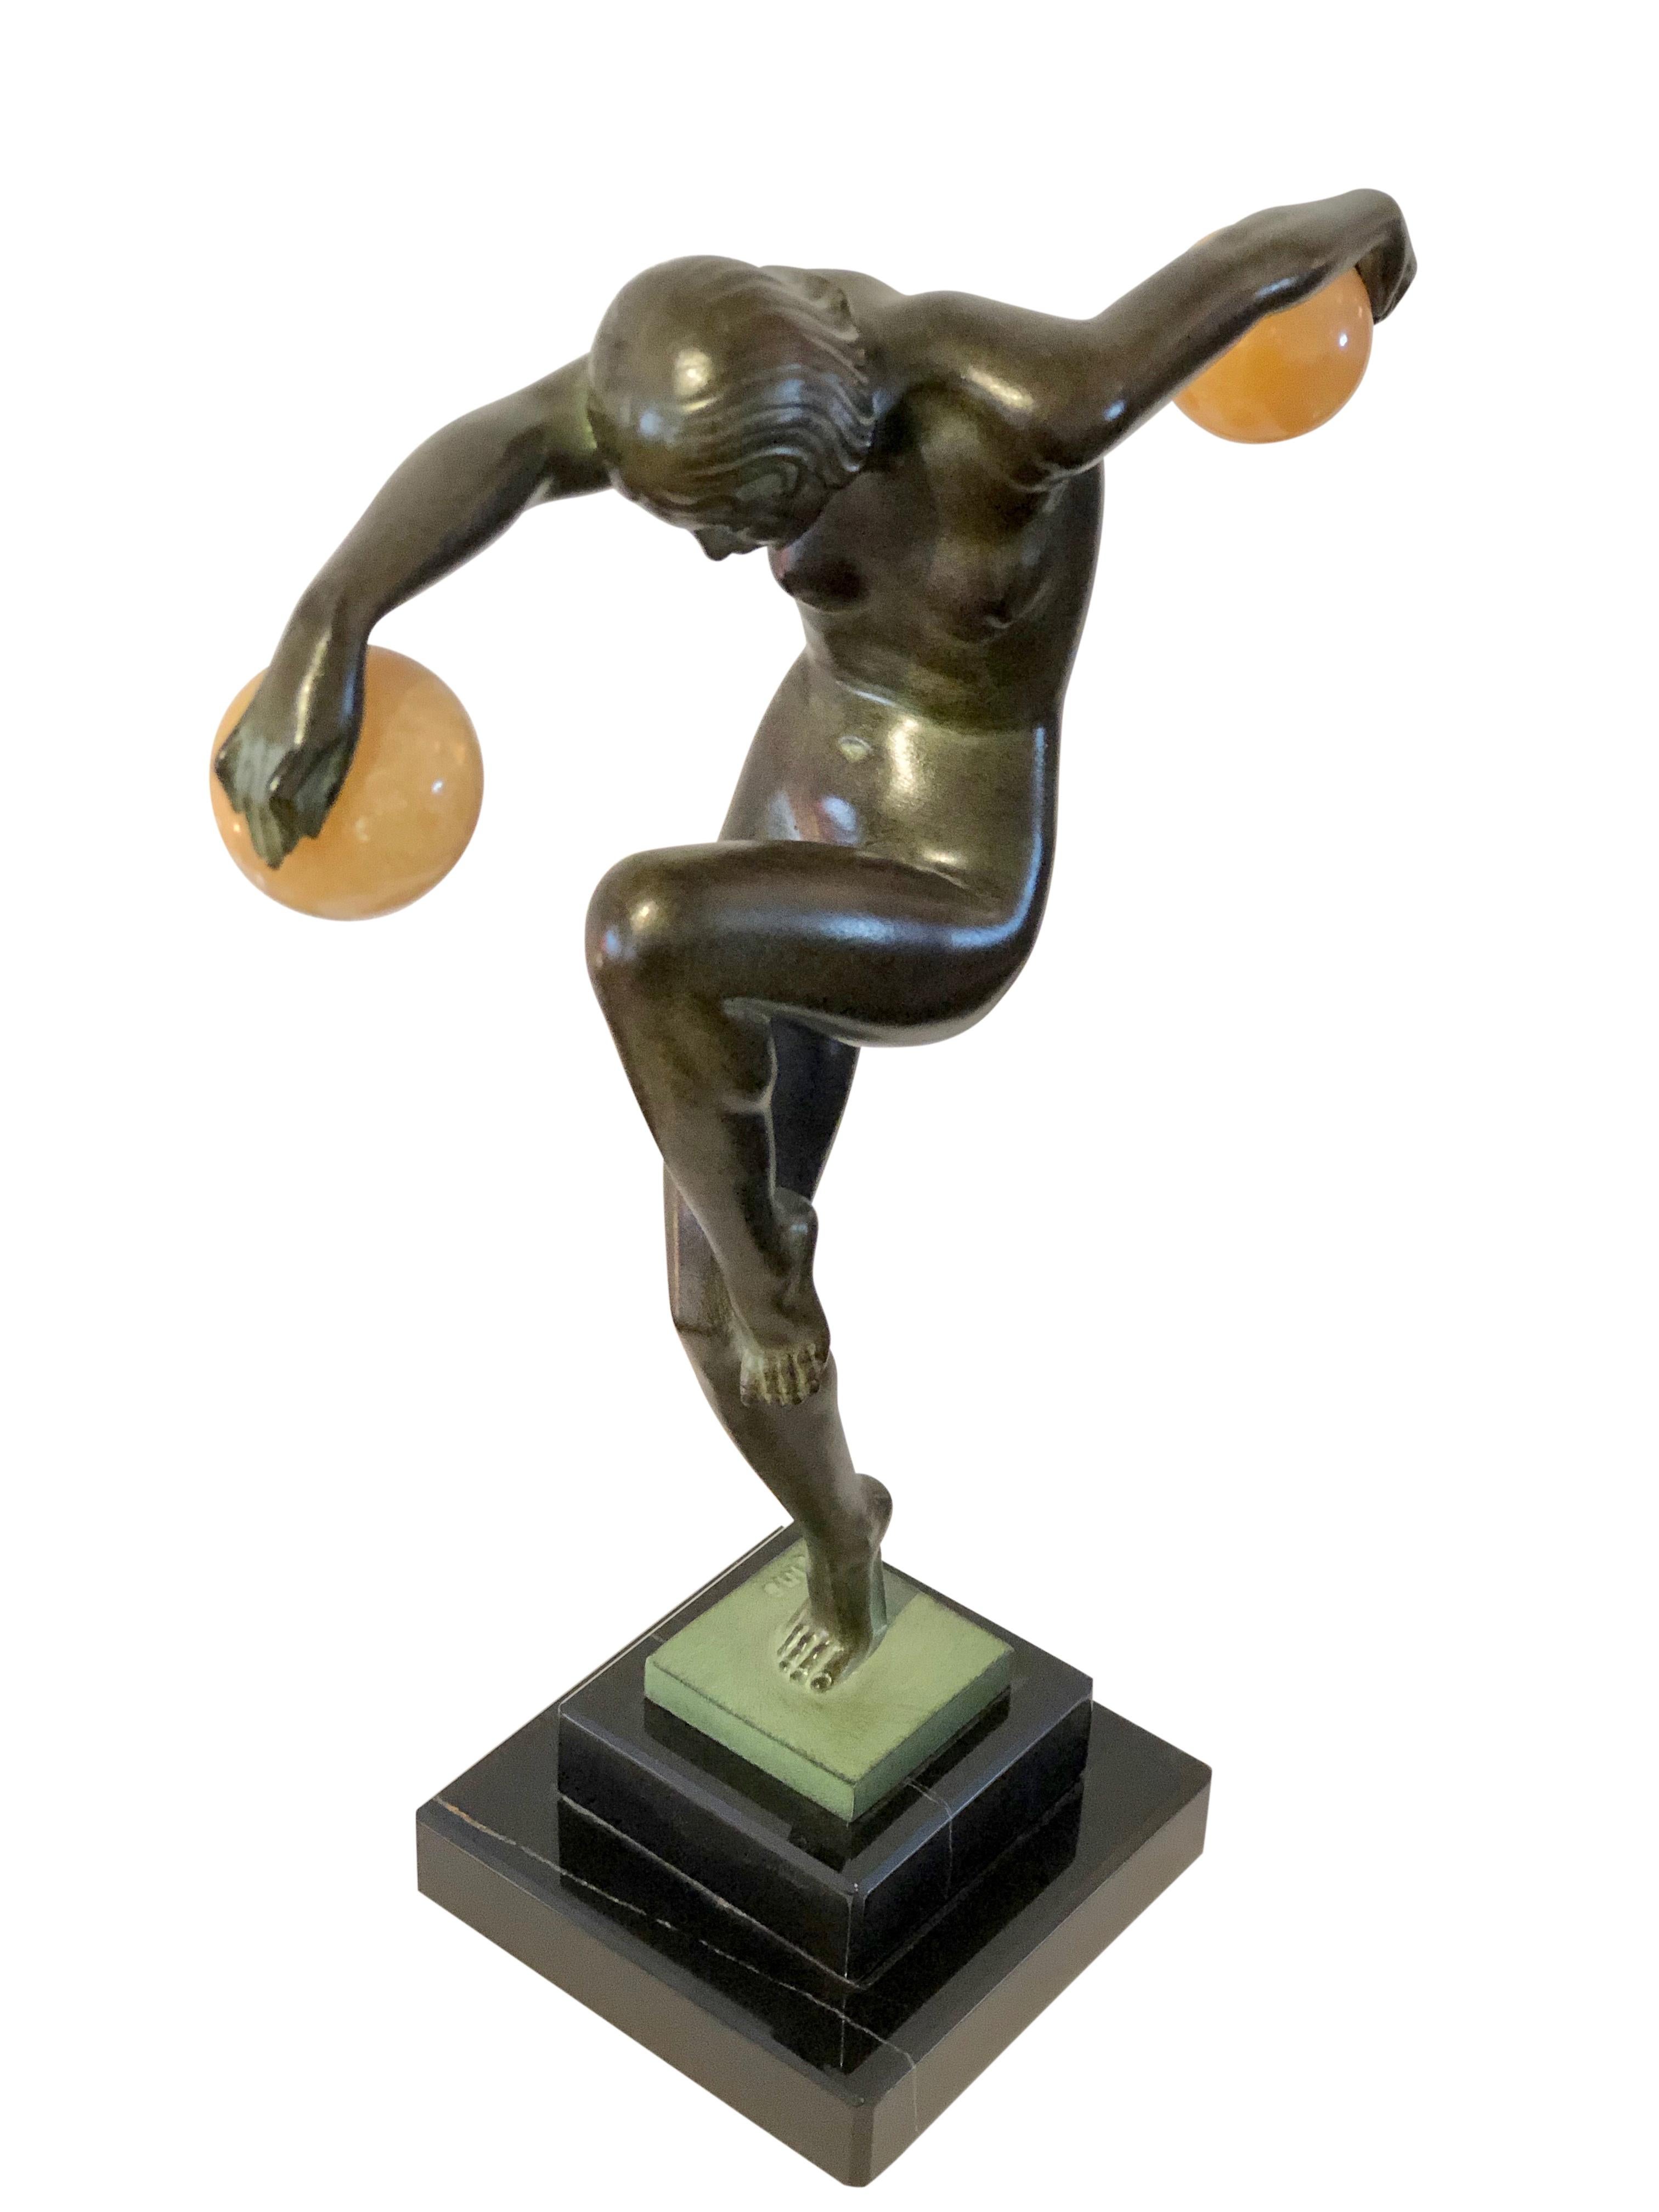 Contemporary Danseuse Aux Boules French Art Deco Dancer Sculpture by Denis for Max Le Verrier